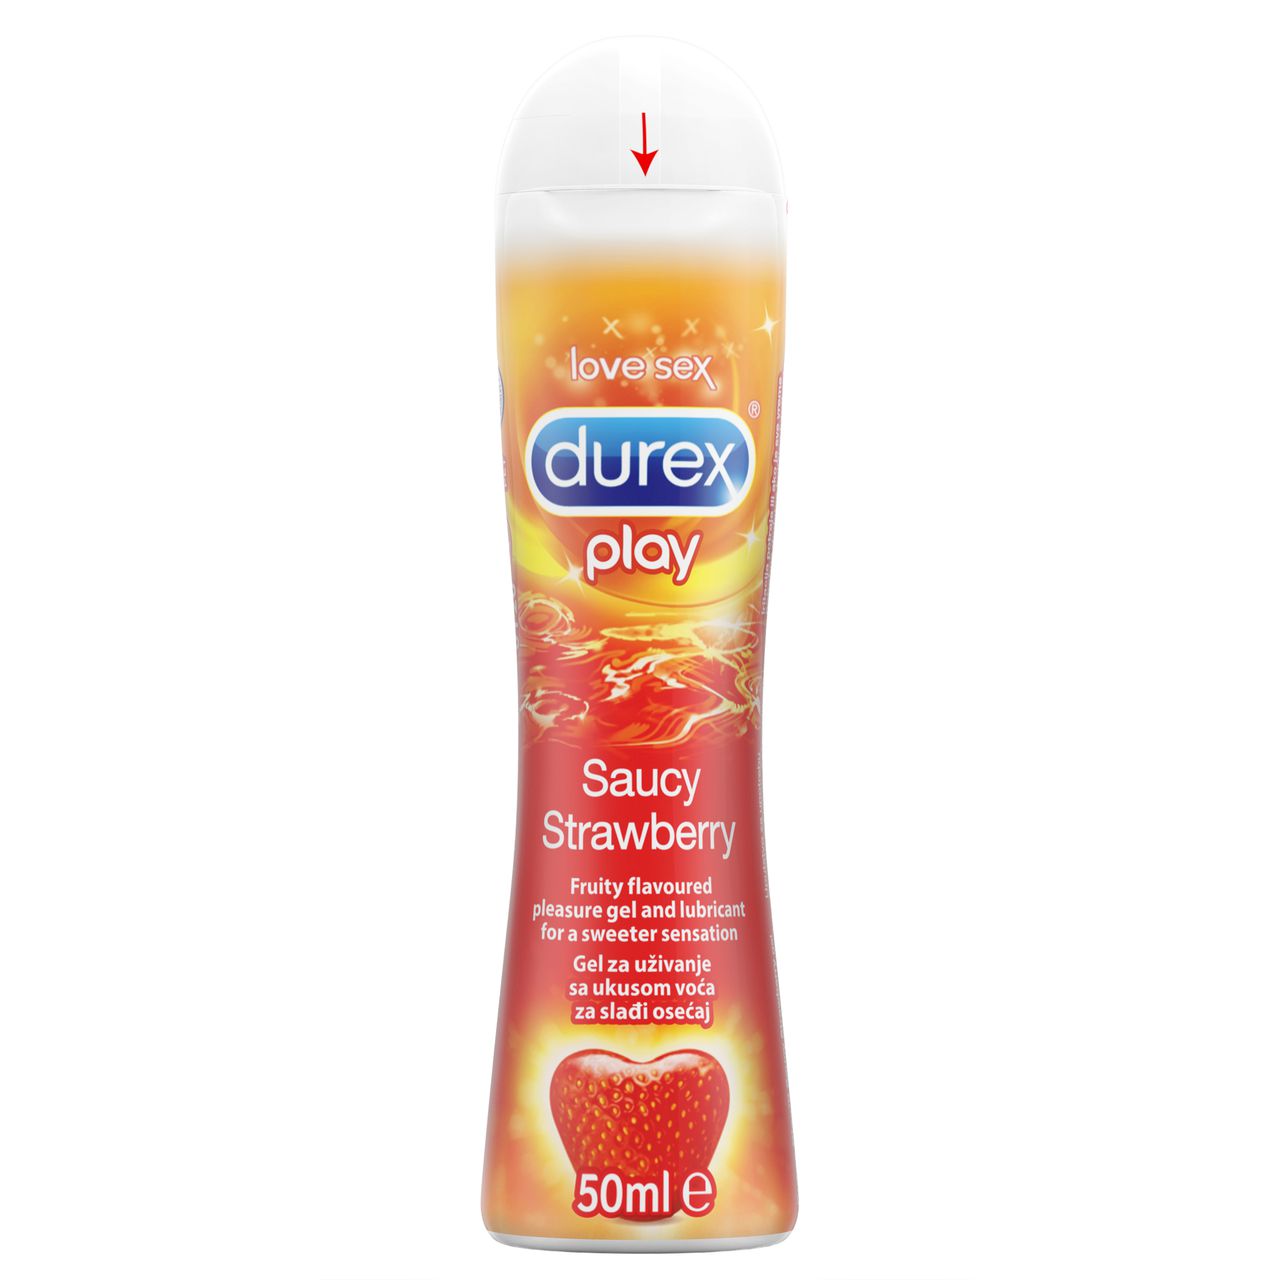 Durex Play Saucy Strawberry - 50ml